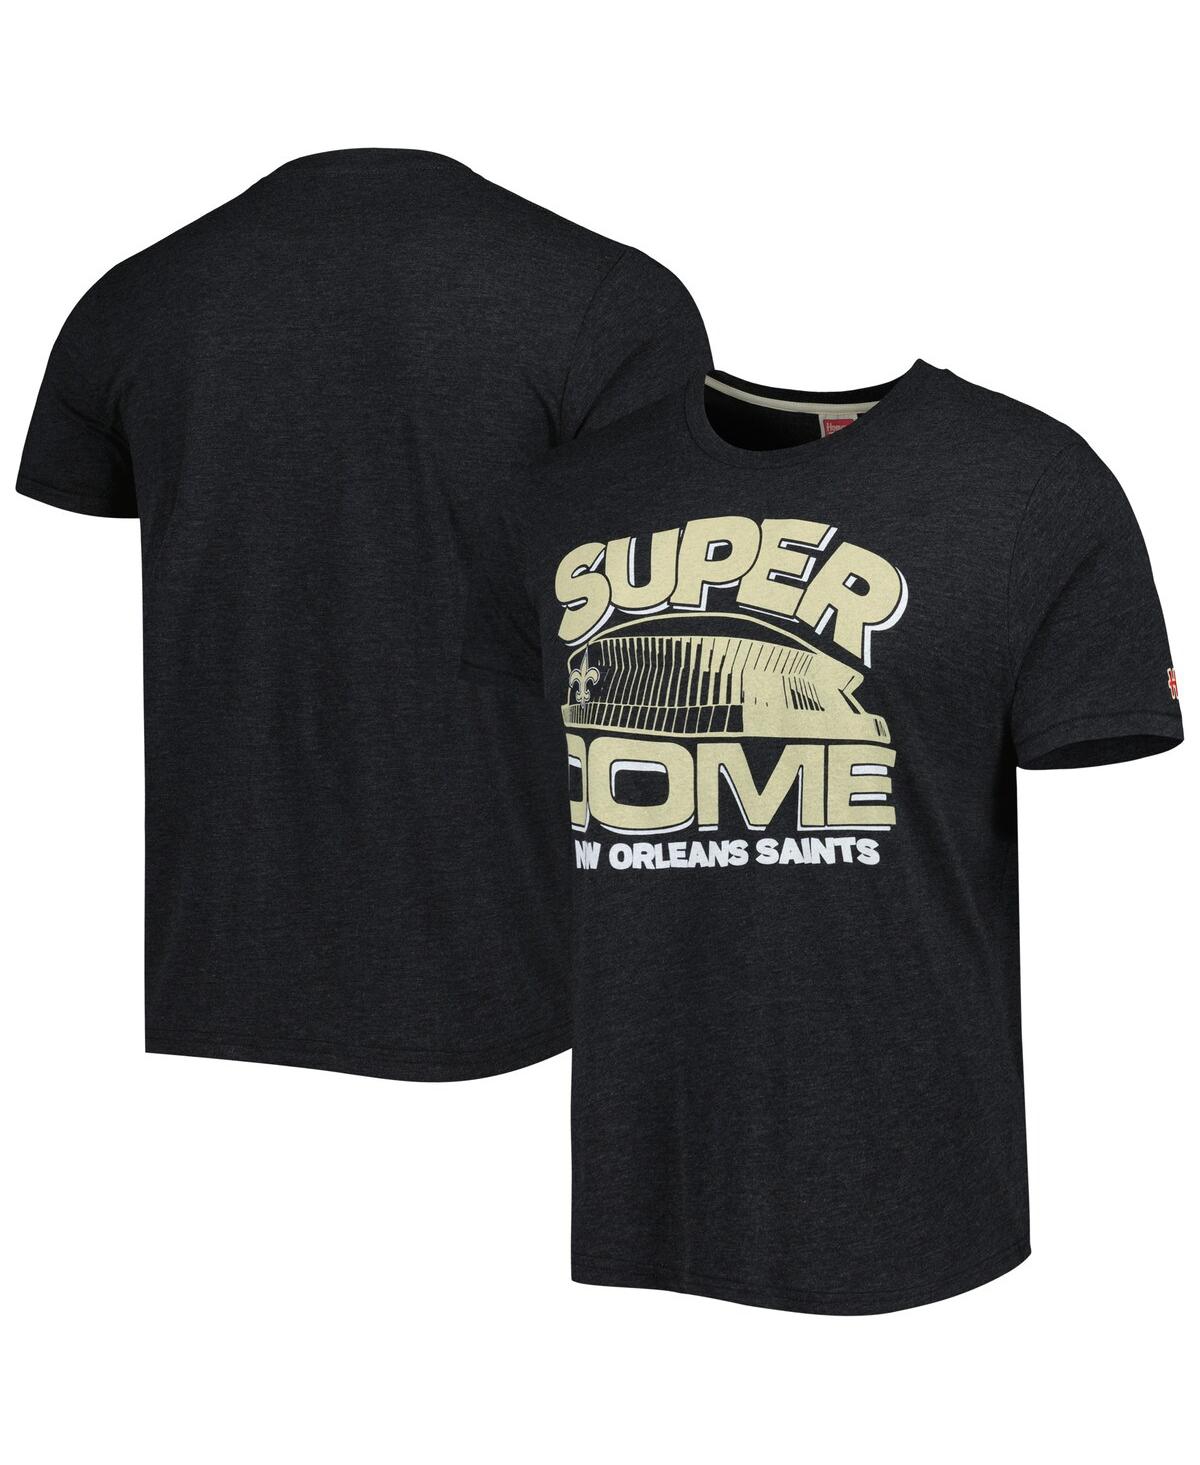 Men's Homage Black New Orleans Saints Superdome Hyper Local Tri-Blend T-shirt - Black